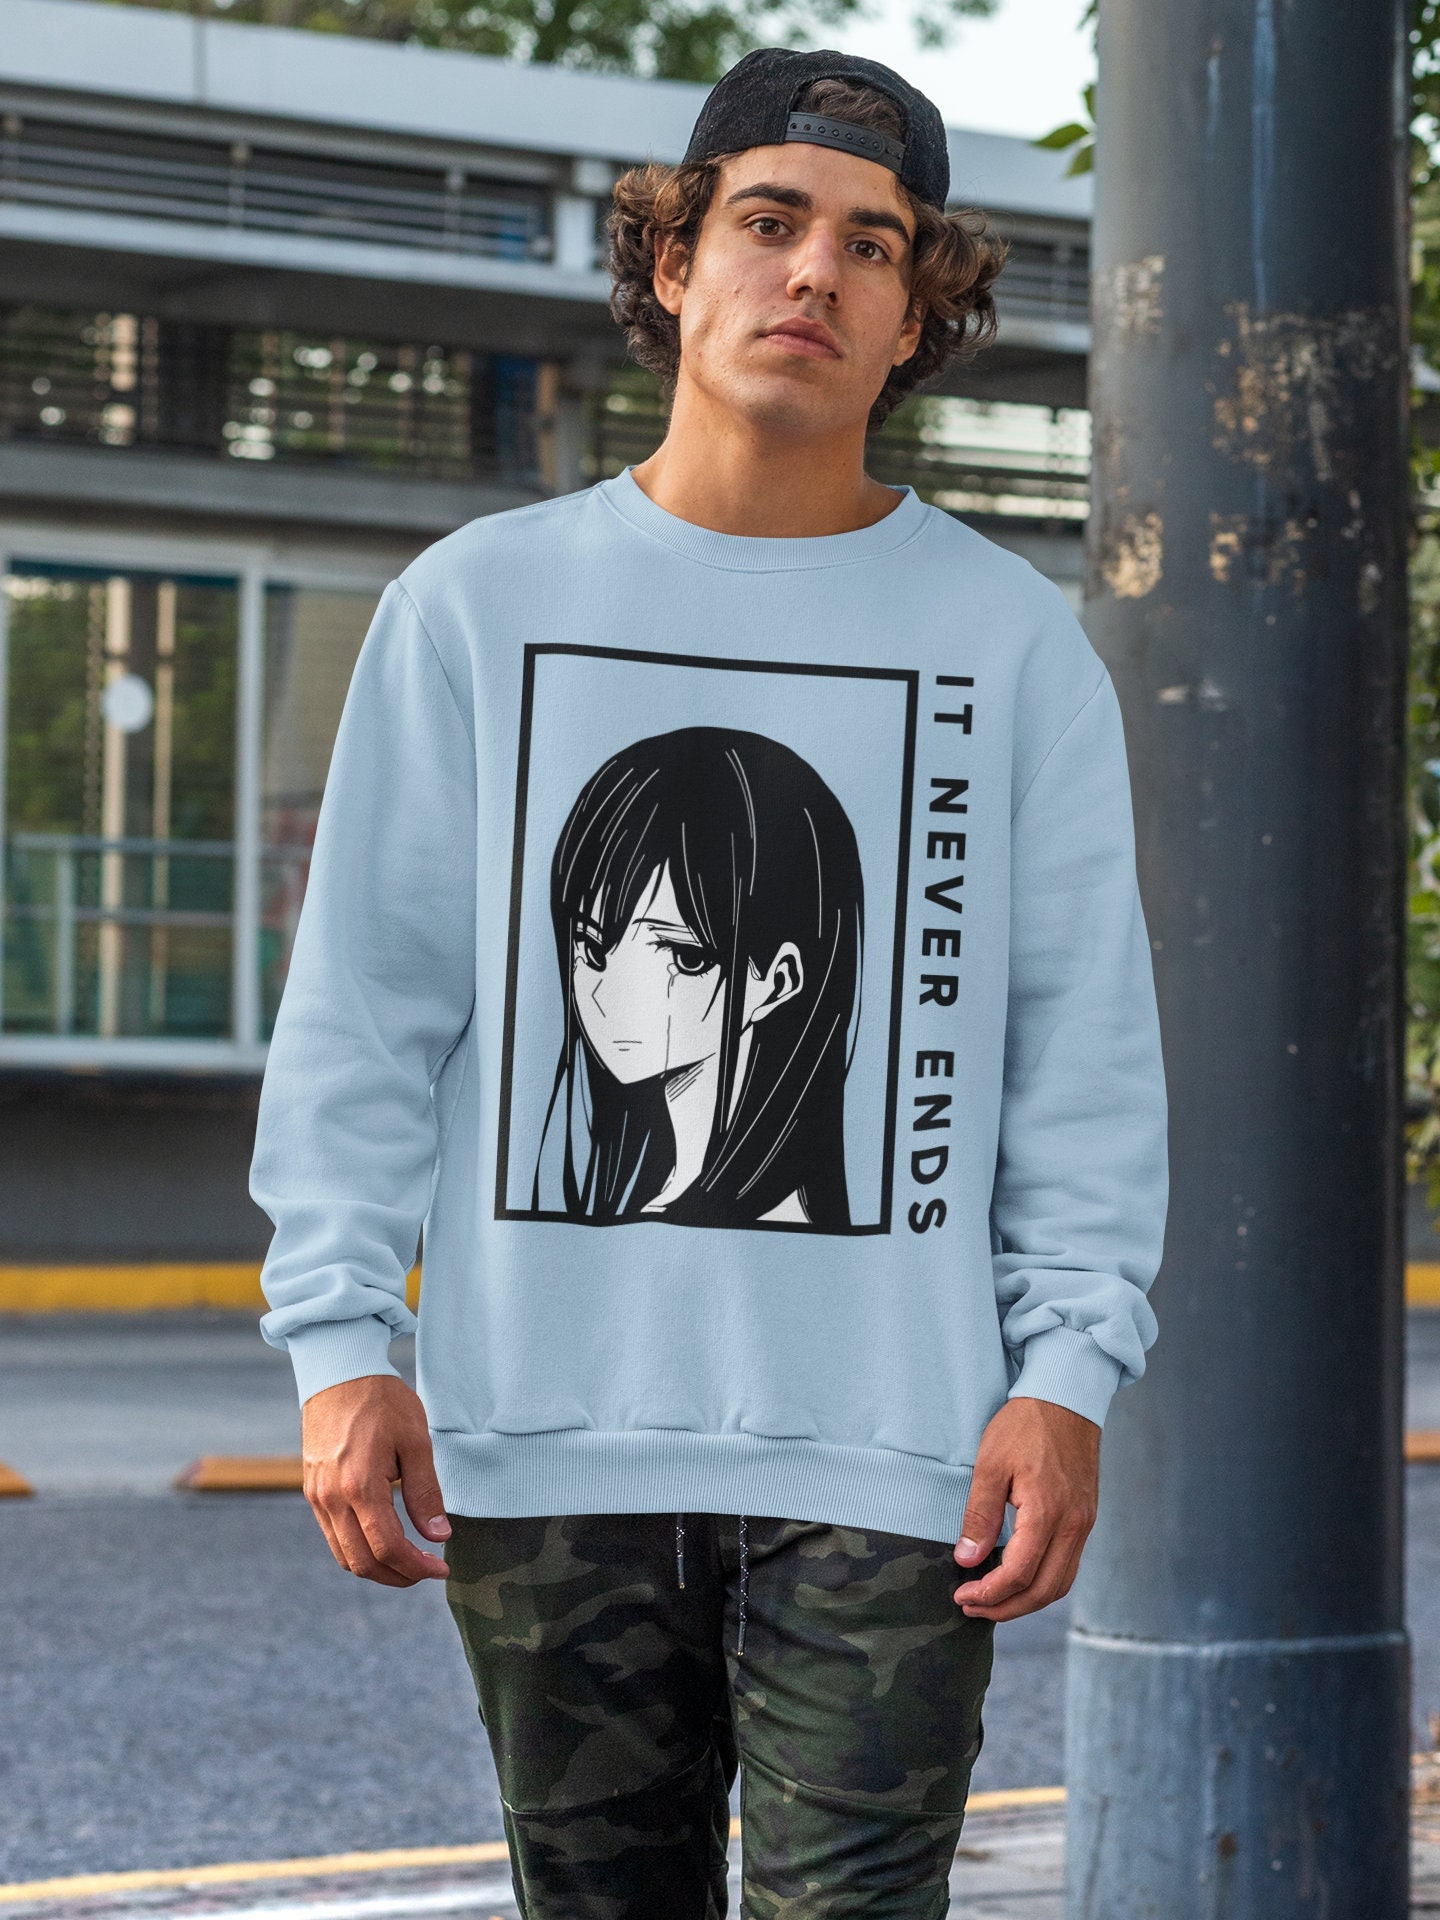 Aesthetic cyberpunk anime girl' Unisex Crewneck Sweatshirt